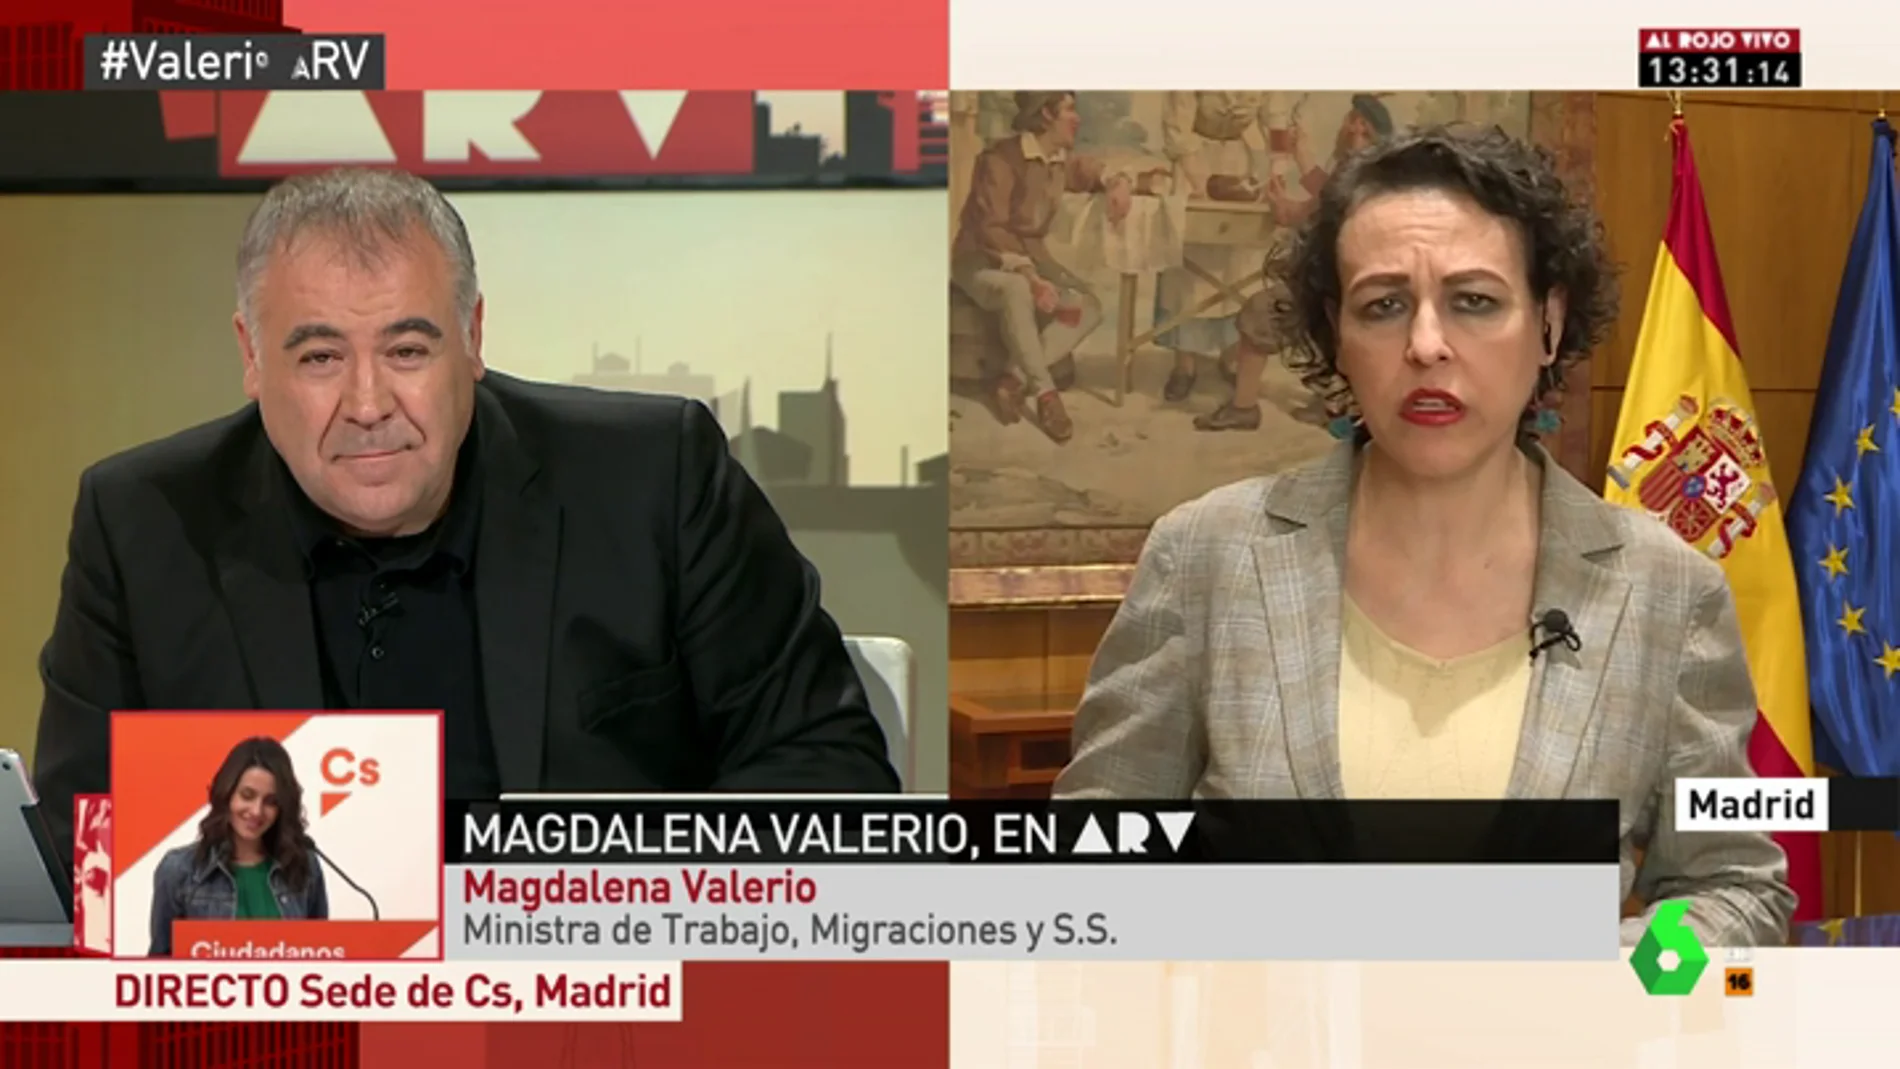 Magdalena Valerio: "A 'Billy el Niño' le quitaría la medalla y el plus de la pensión. Por desgracia, forma parte de la historia de España"